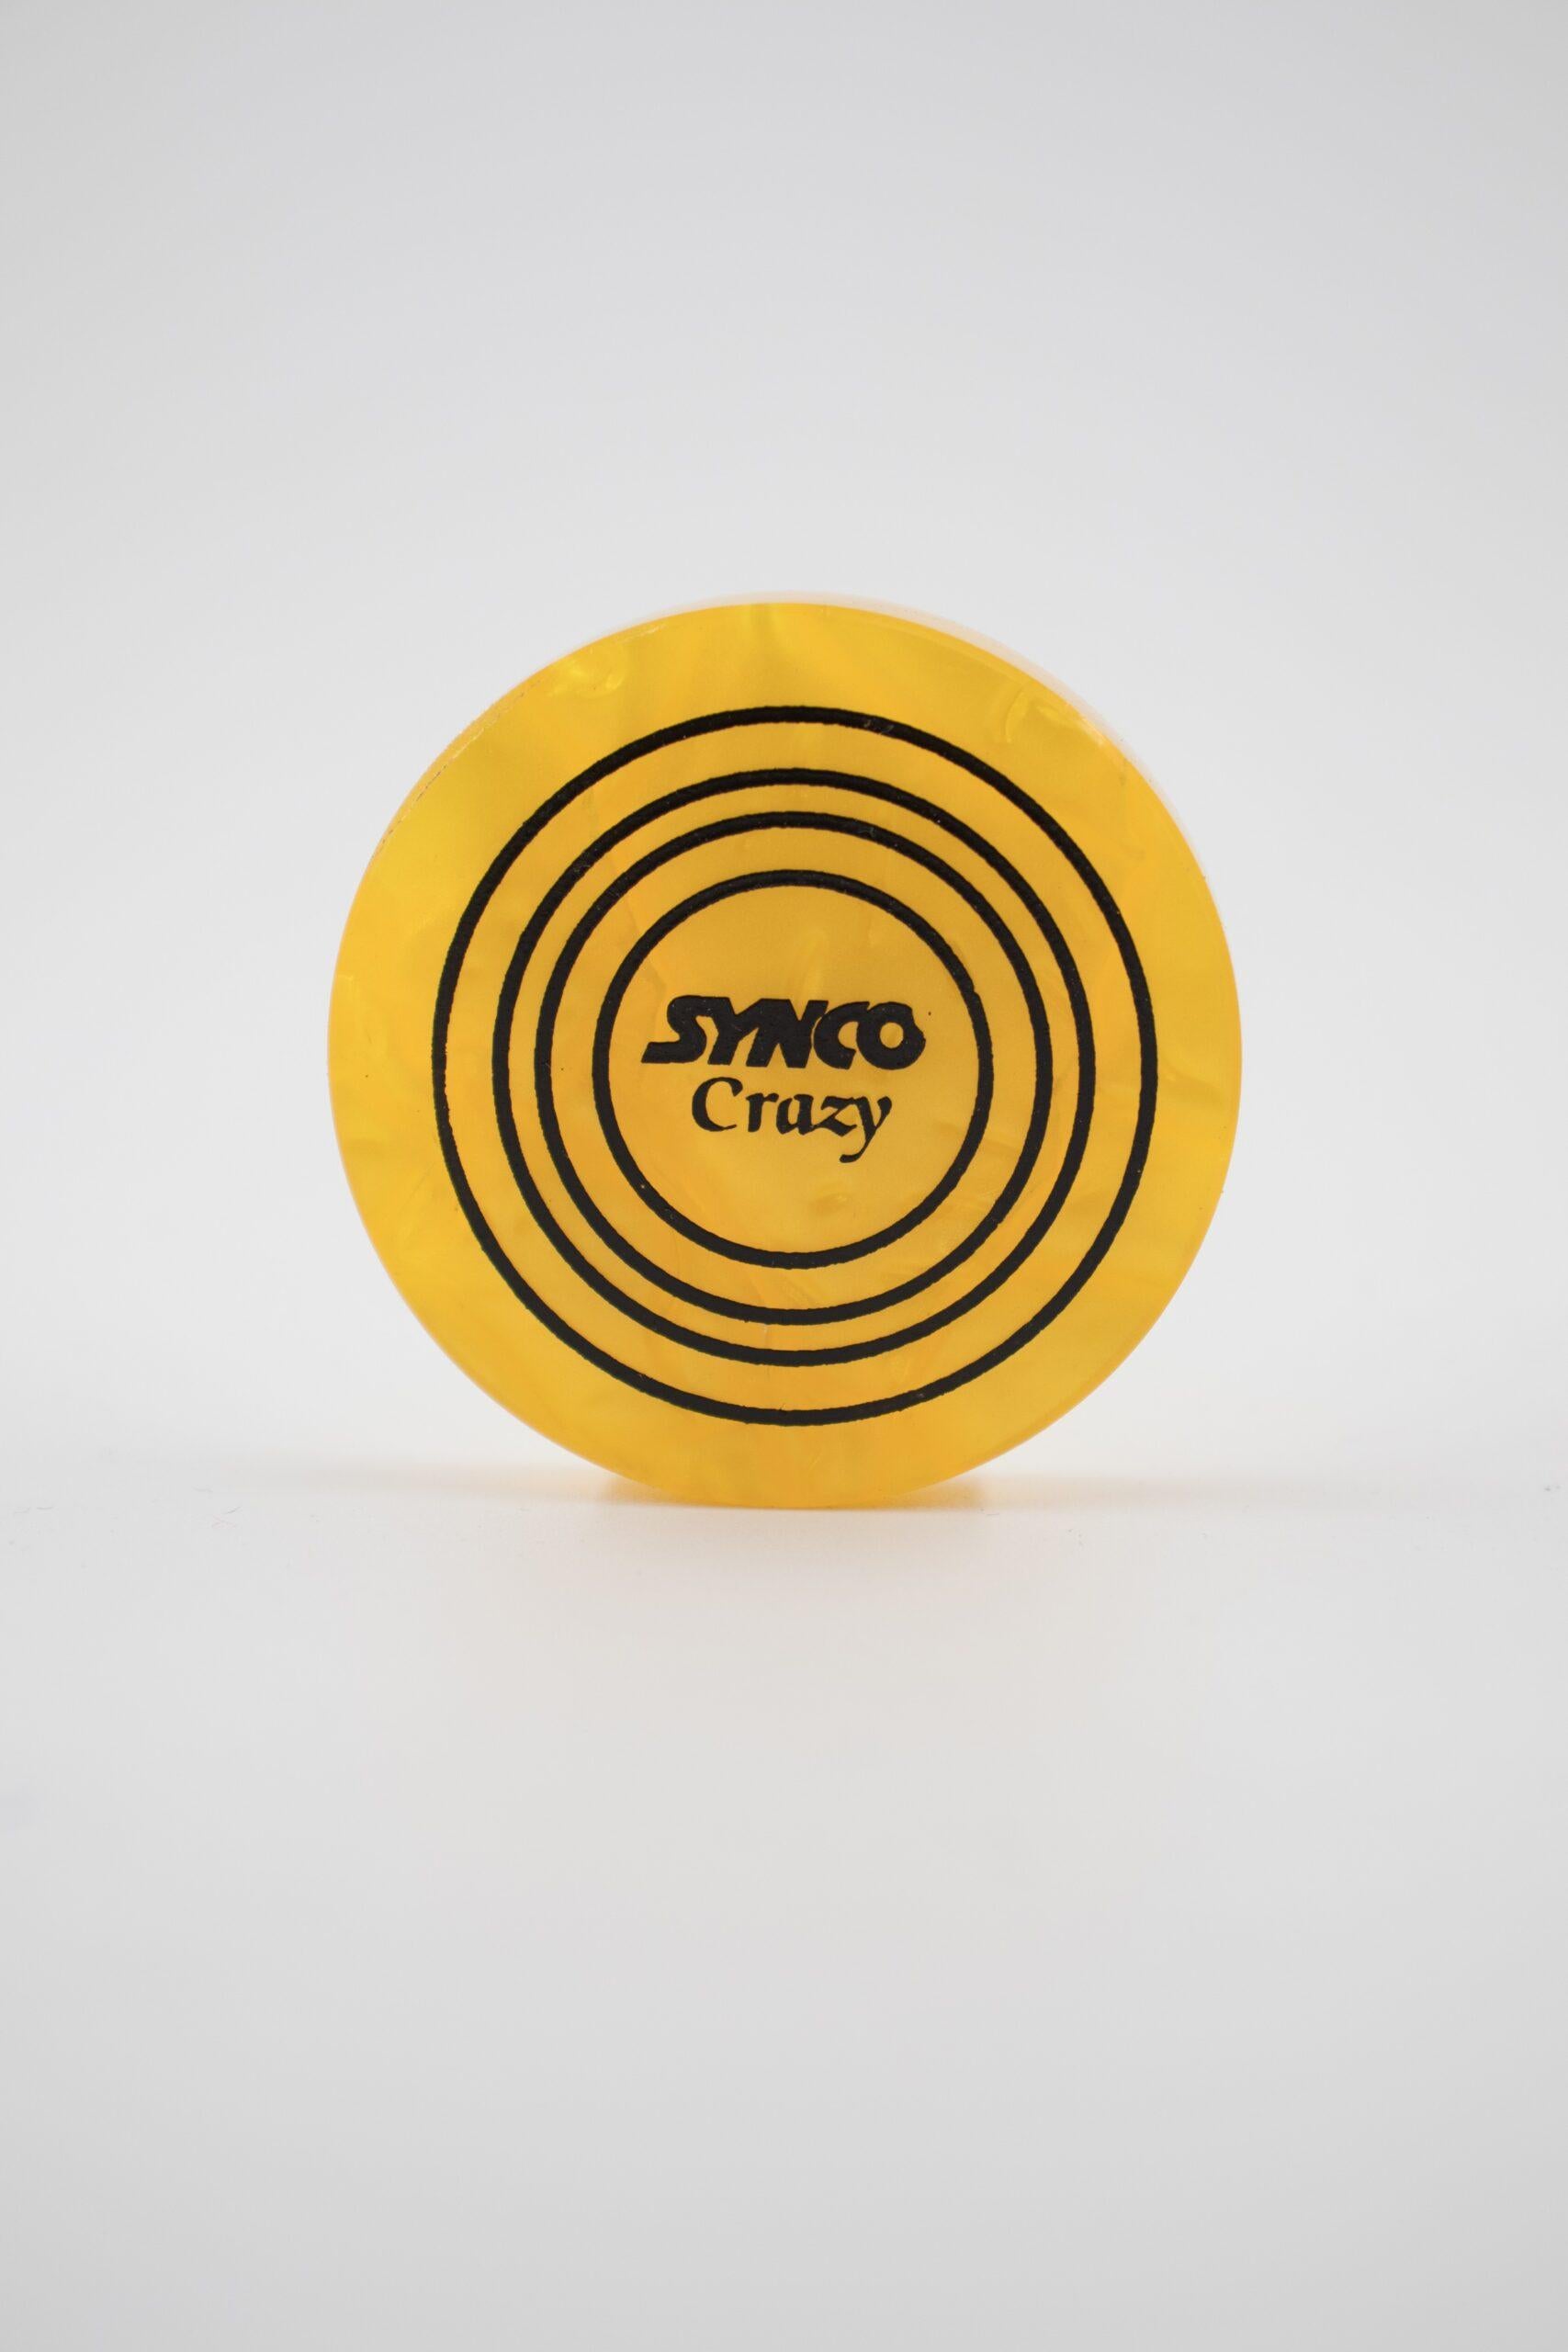 Synco Crazy carrom striker, Assorted color - 1